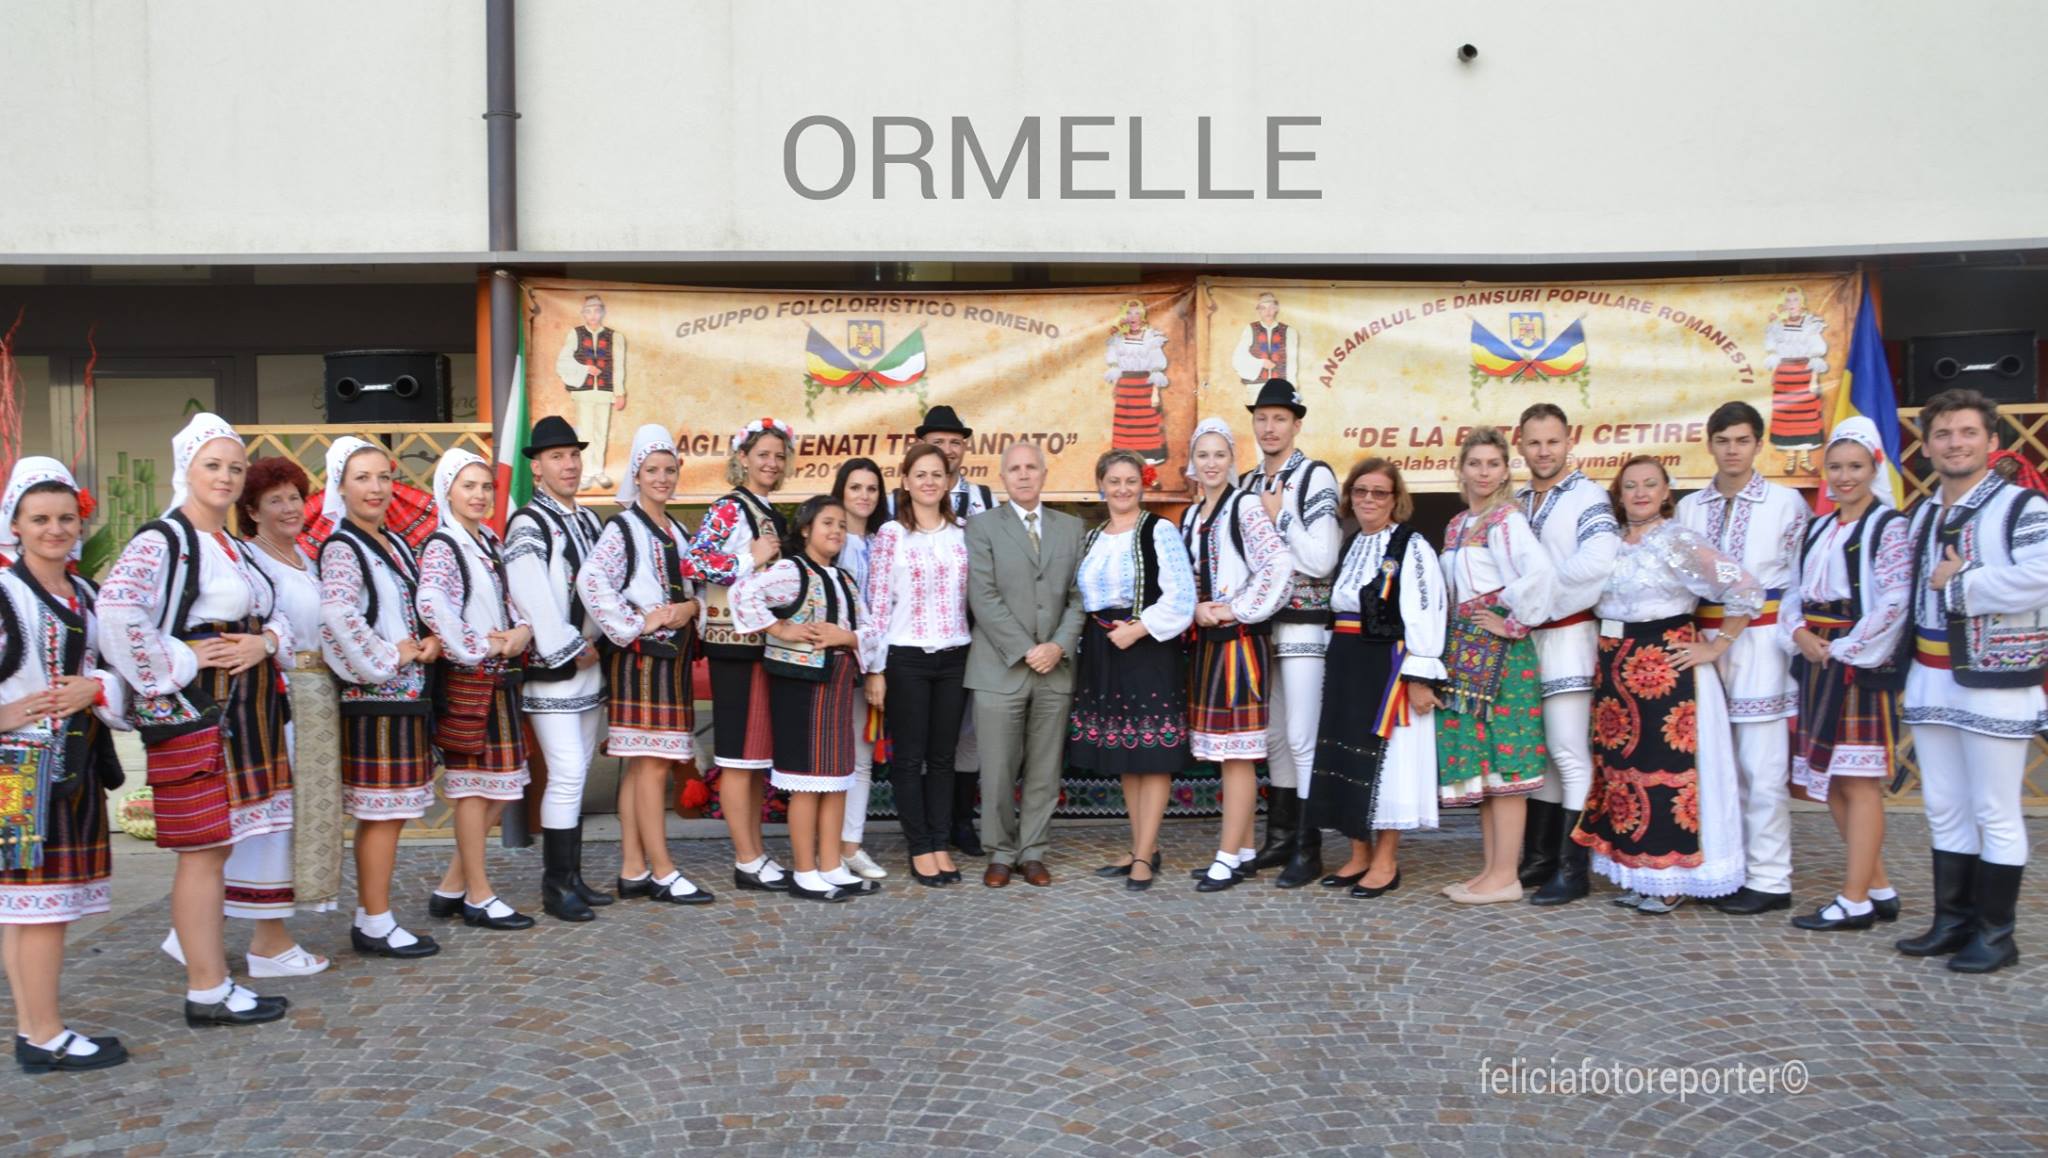 Festa tradizionale romena a Ormelle I-a edizione 2016